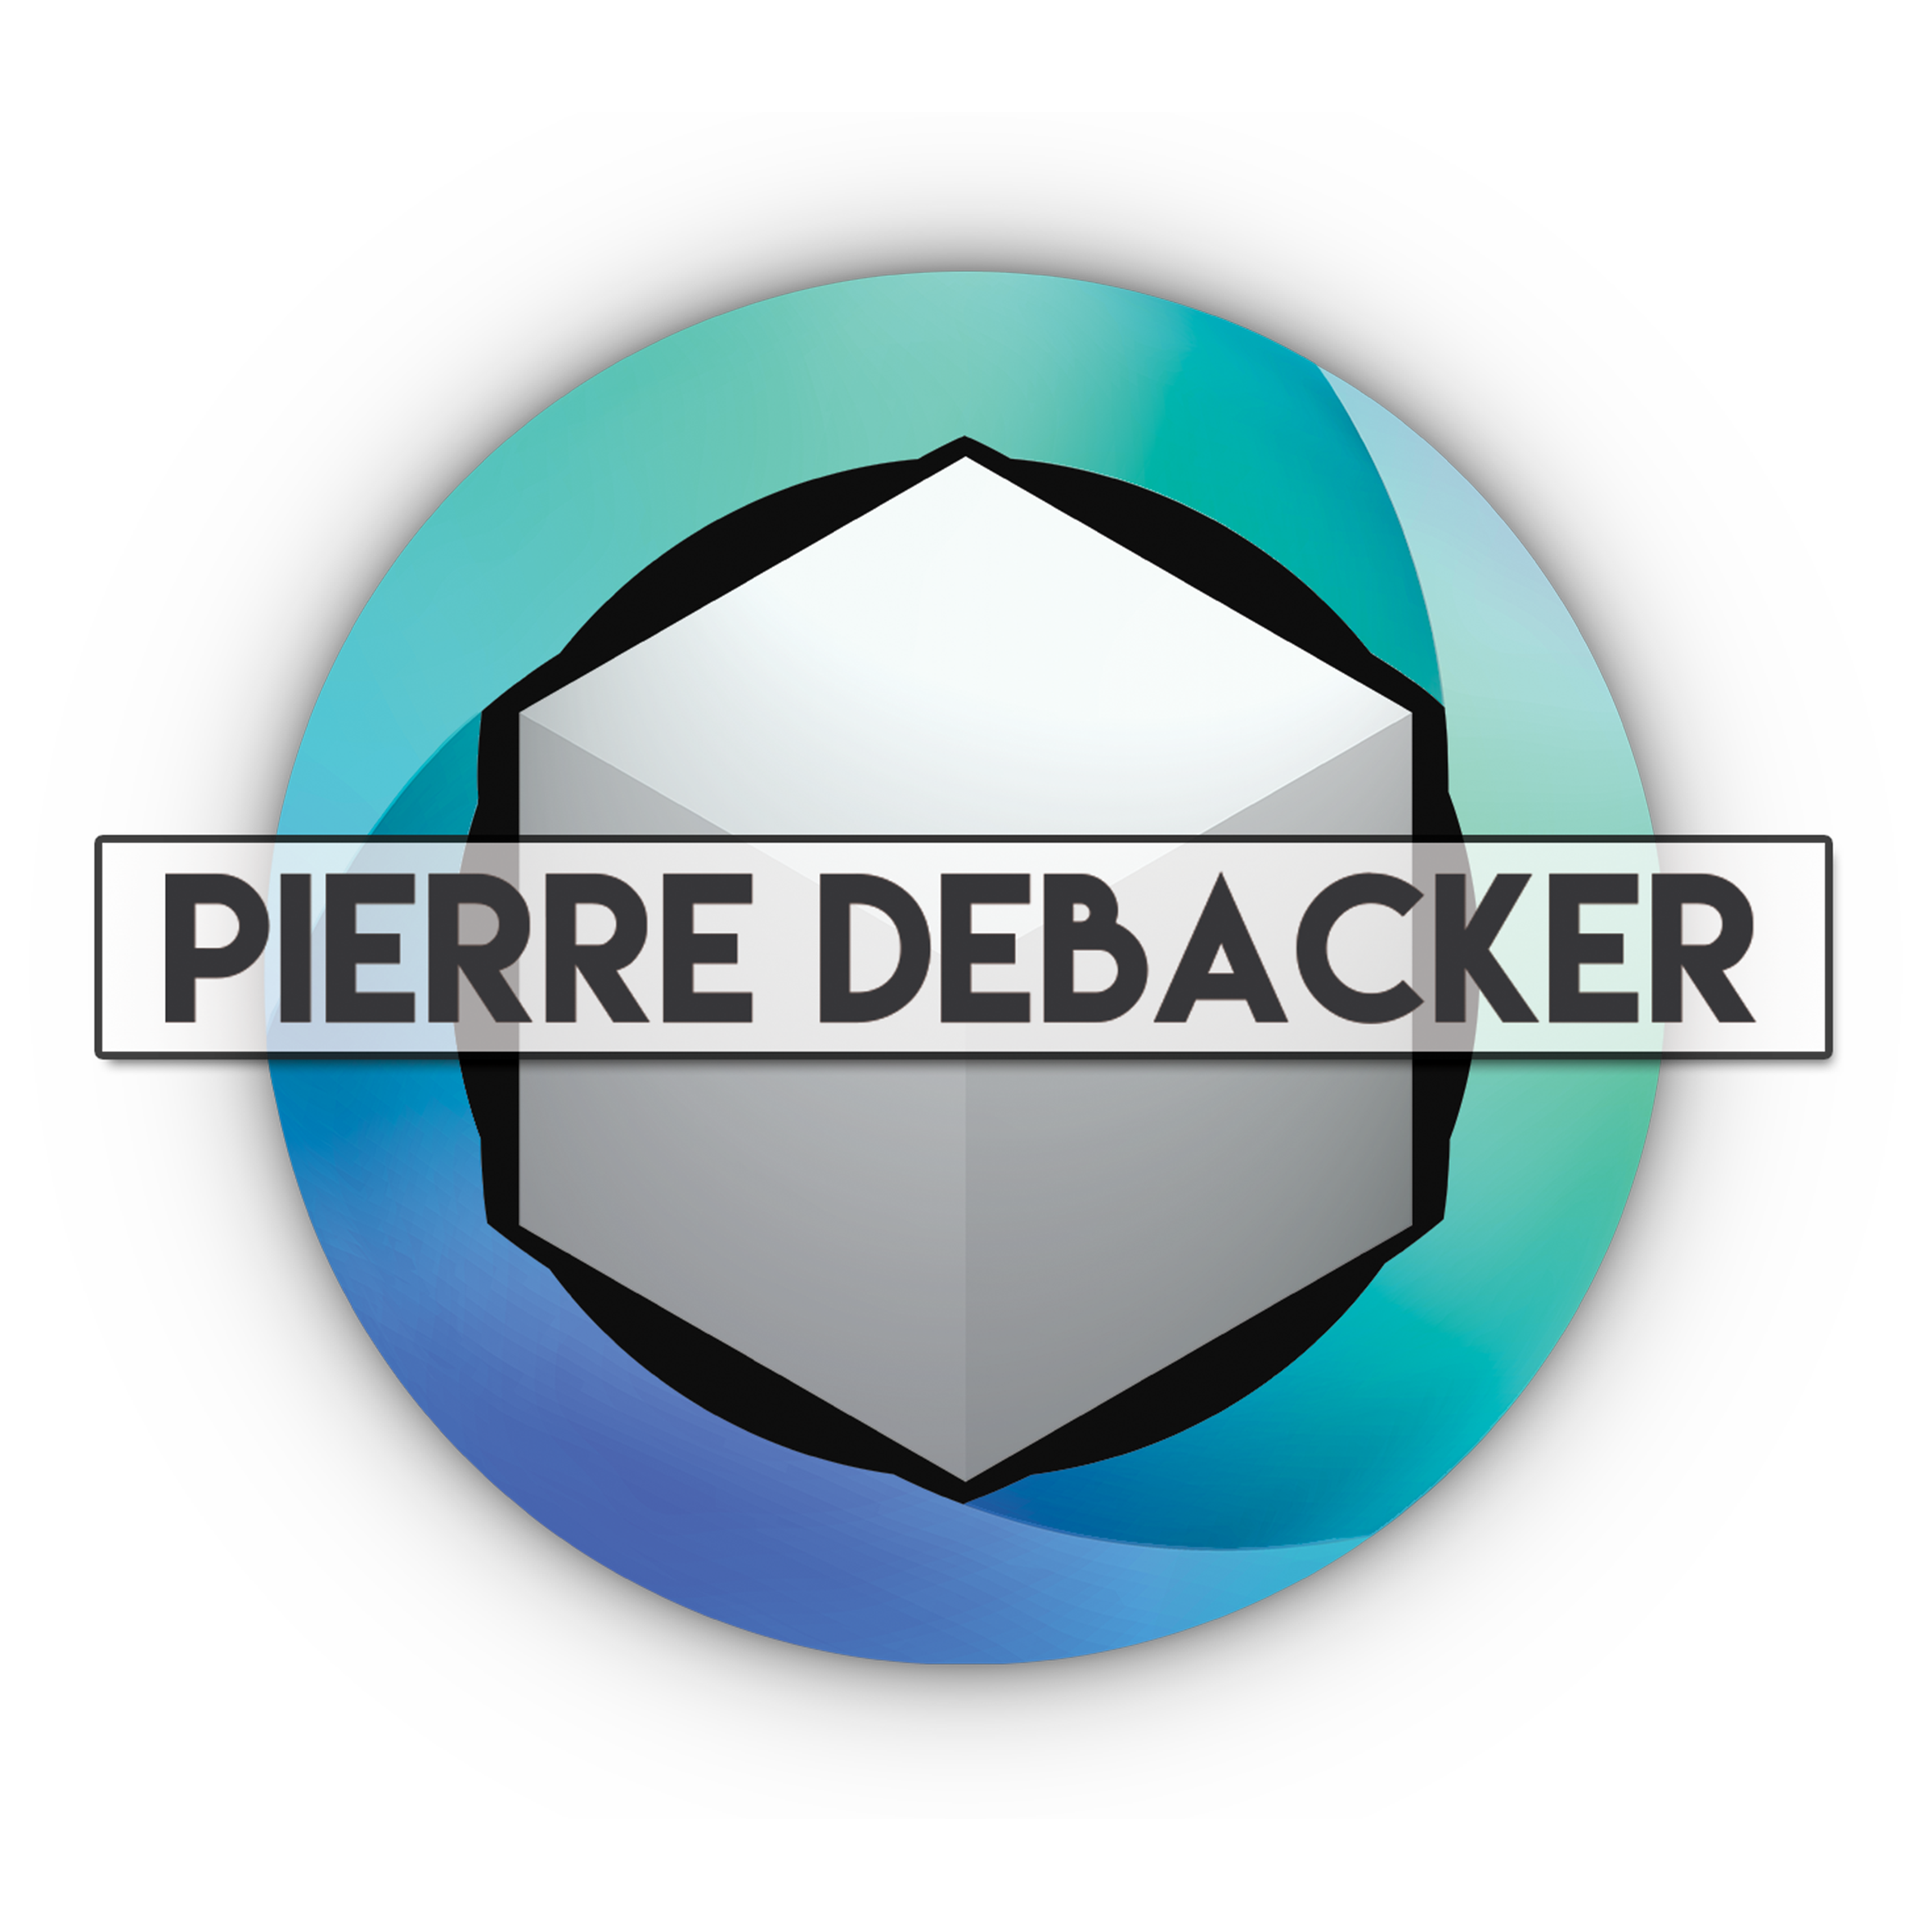 Pierre Debacker